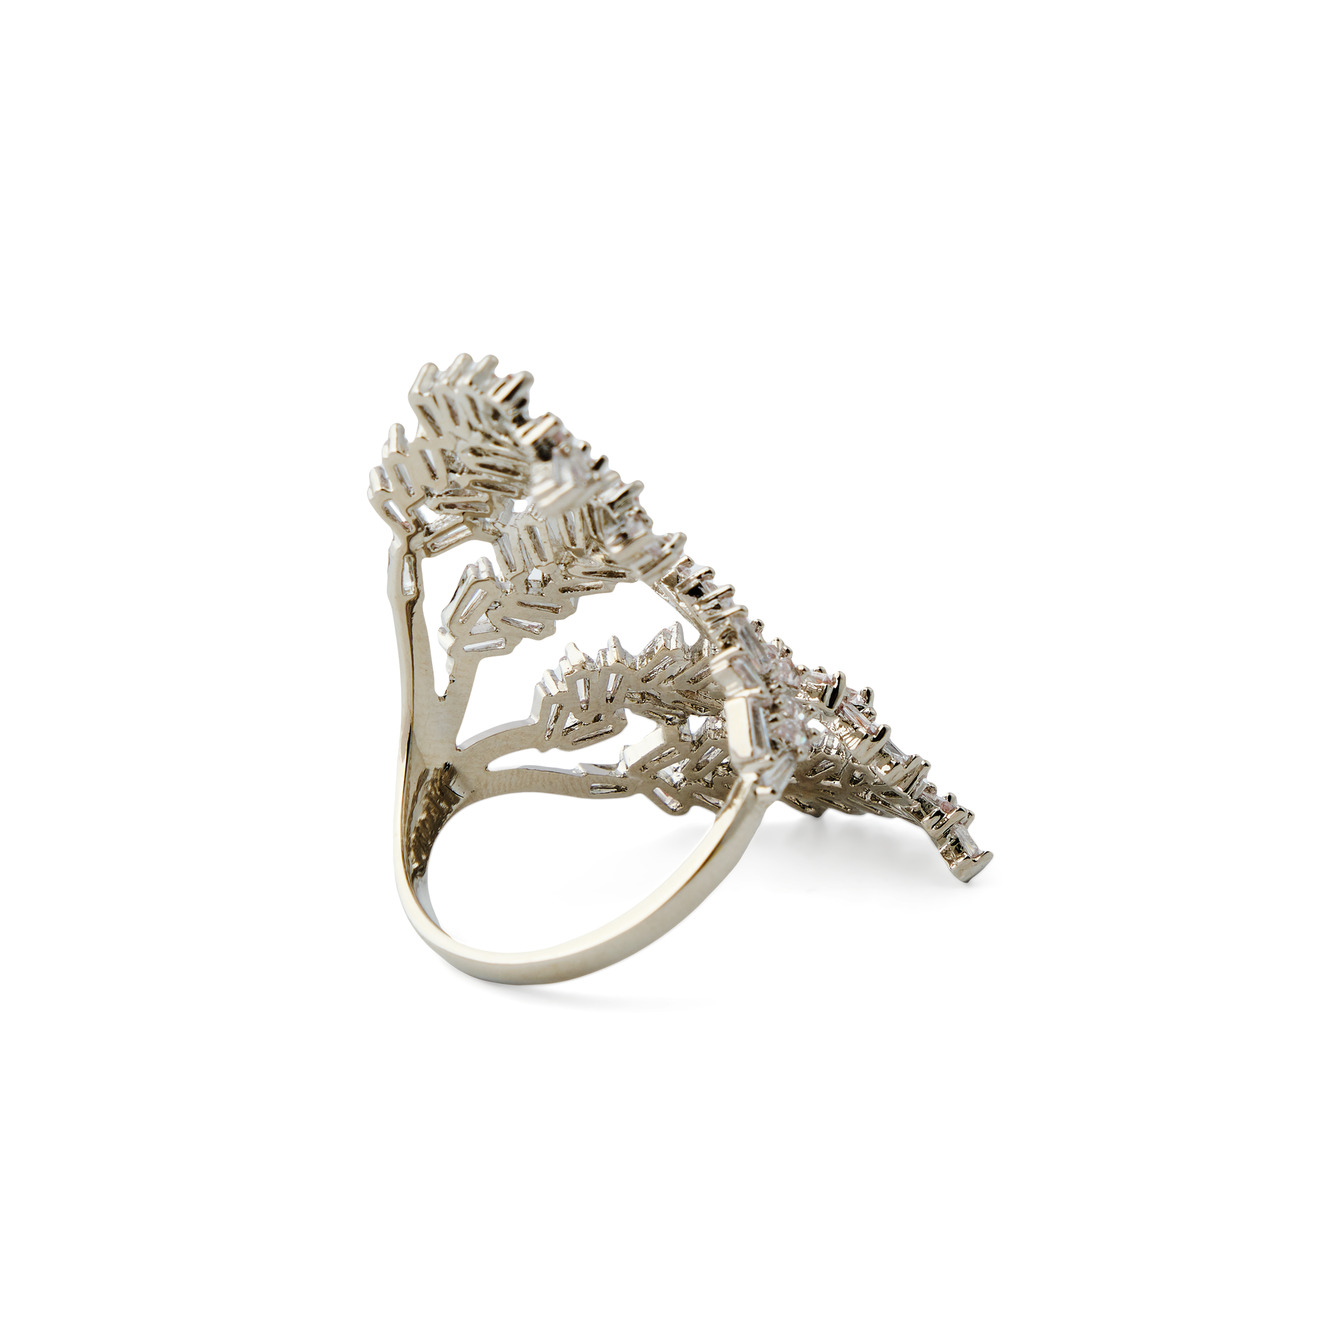 Herald Percy Серебристое кольцо-ветка с кристаллами herald percy серебристое колье с кристаллами в виде капель